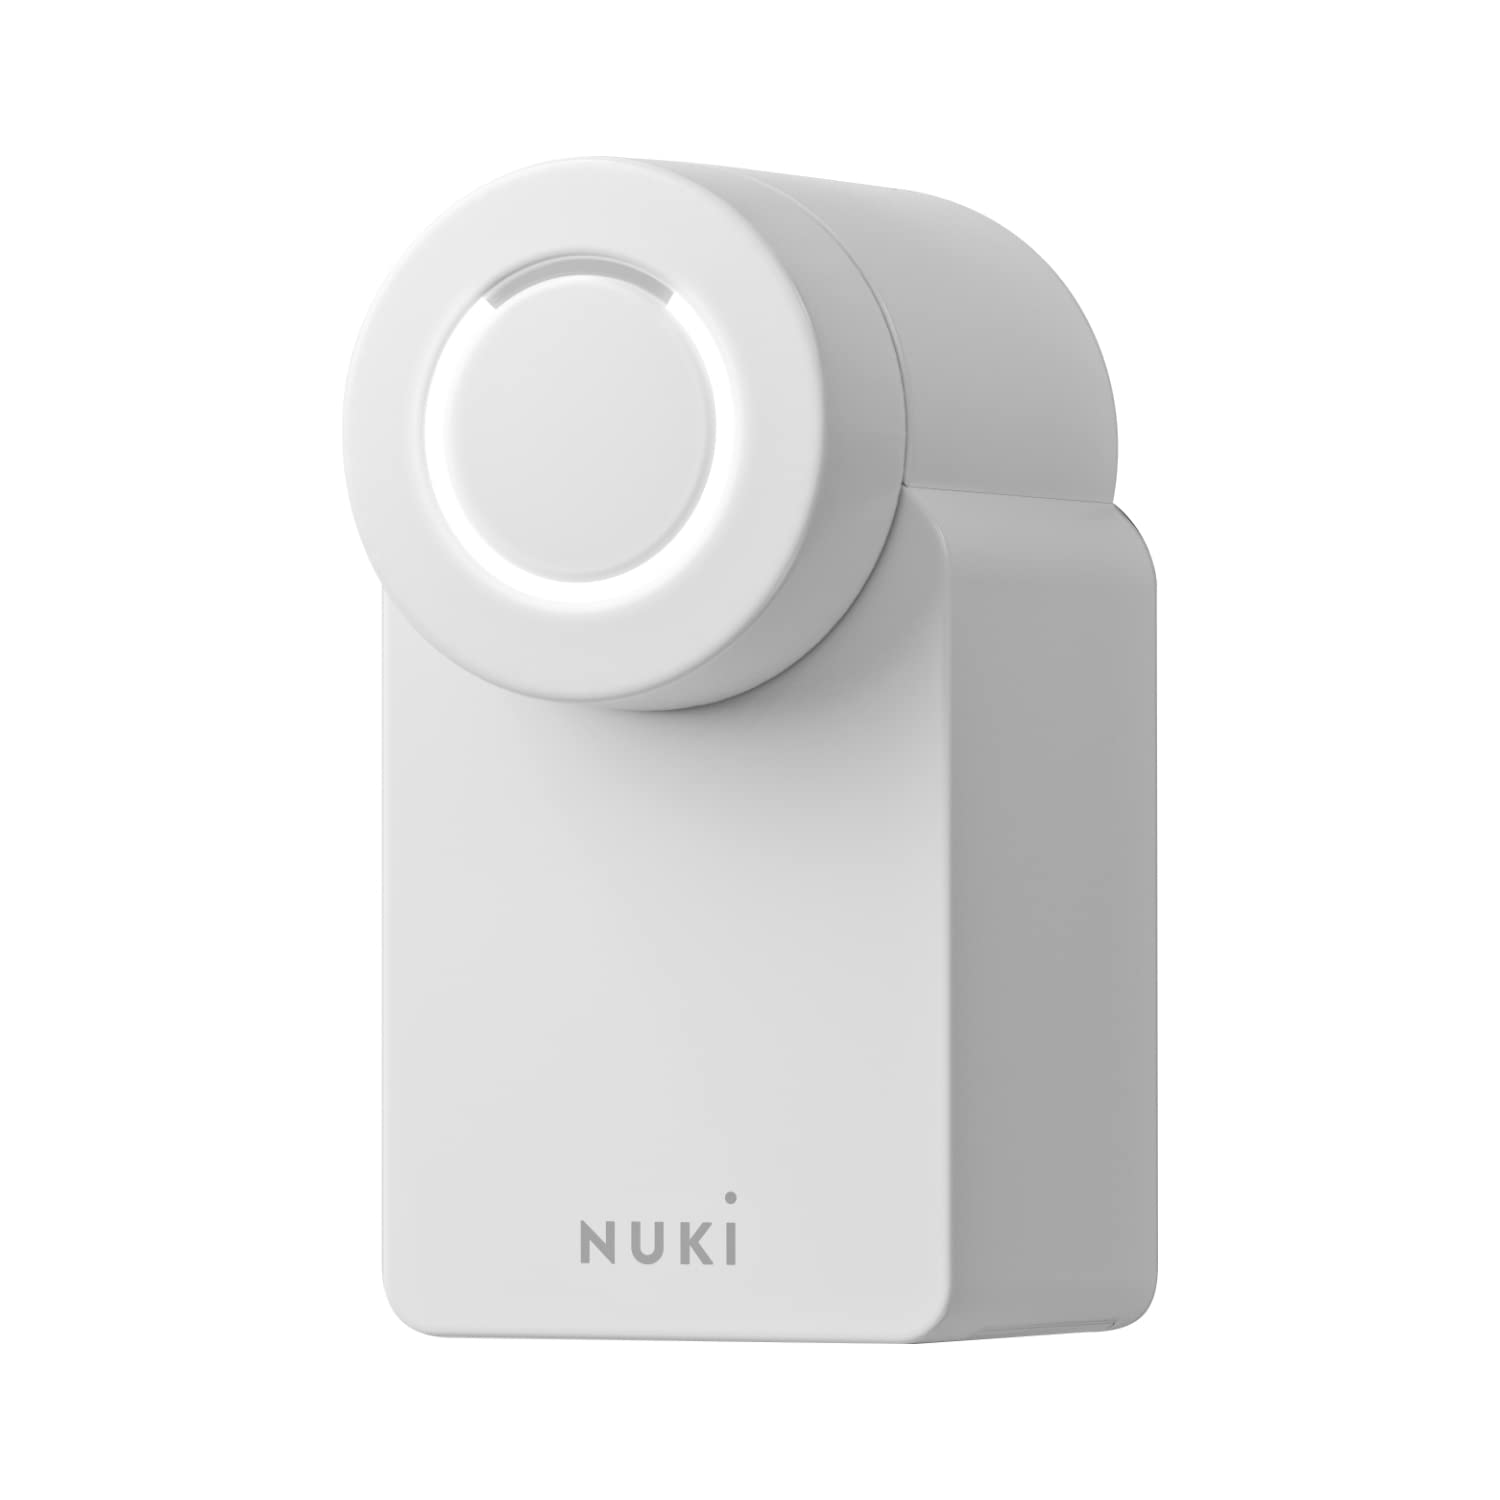 Nuki Smart Lock 3.0, elektronisches Schloss für das Schlüssellose Öffnen der Türen ohne Austausch zu müssen, Smart Lock mit AV-TEST zertifiziert, intelligenter Türschloss, Weiß